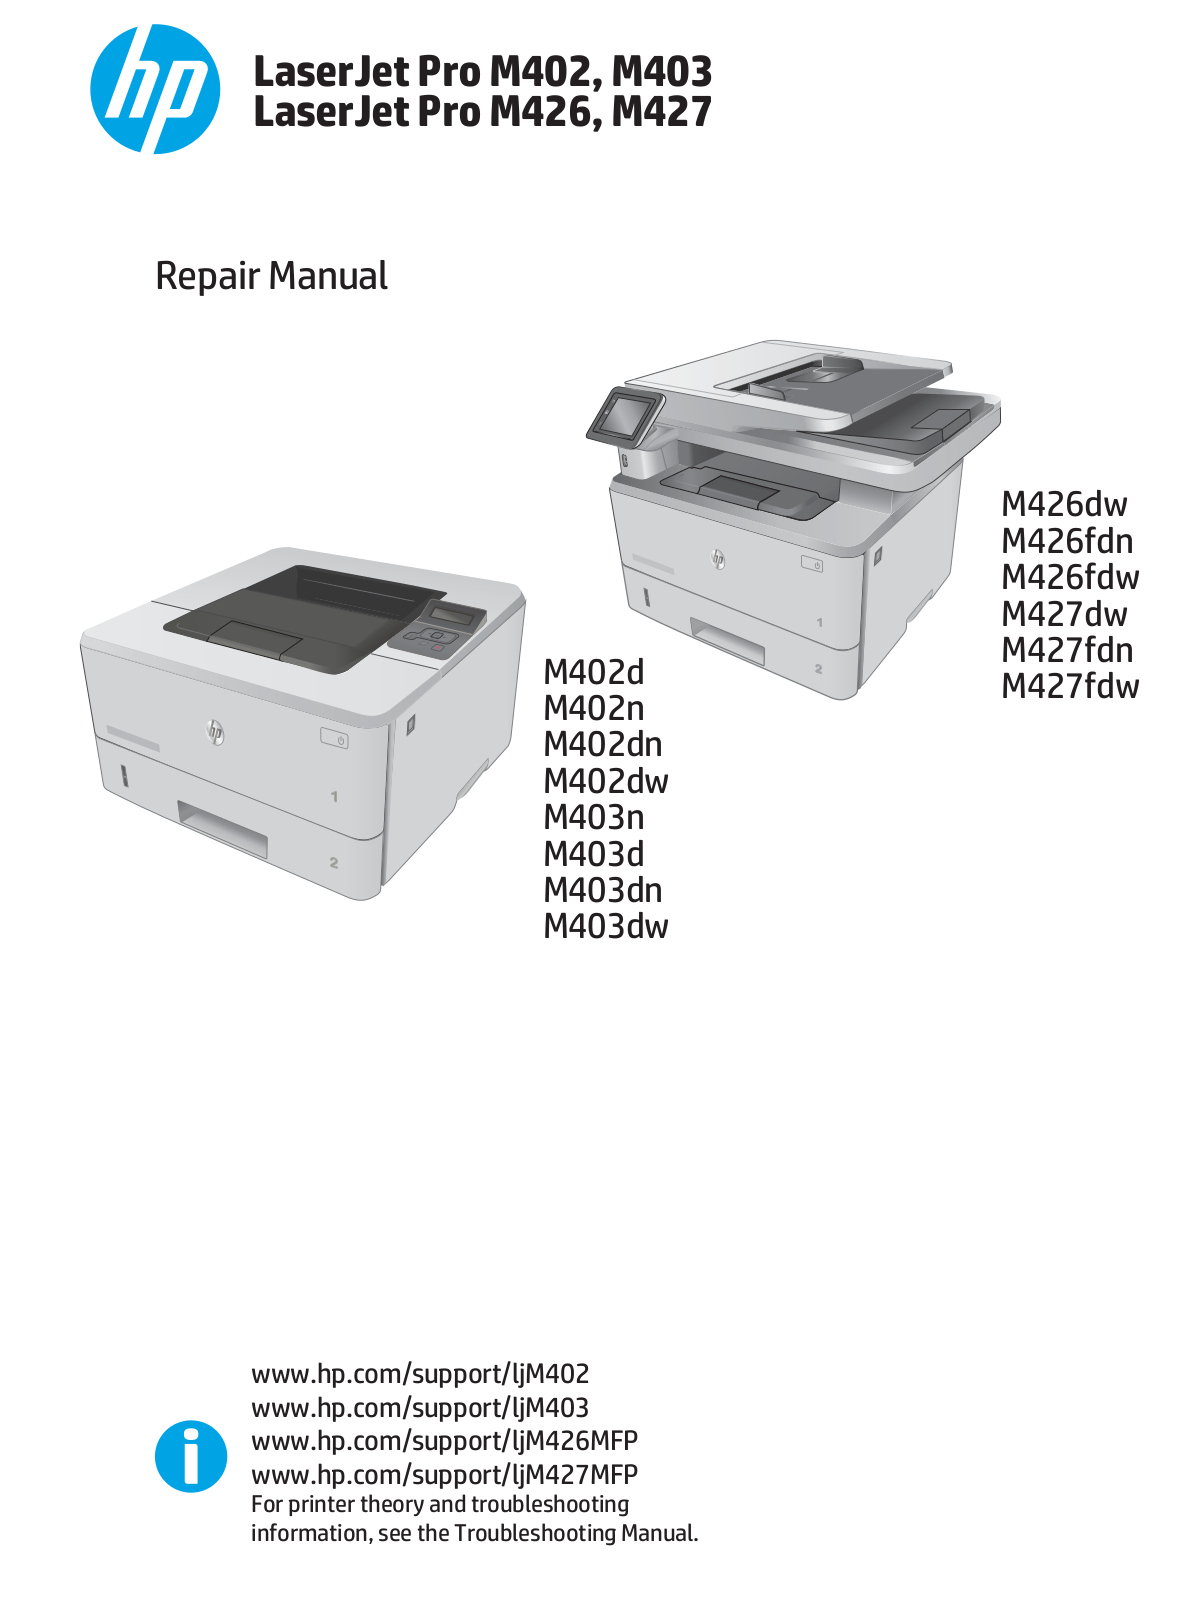 HP LaserJet Pro M402, LaserJet Pro M403, MFP M426, MFP M427 Troubleshooting Manual and Repair Manual